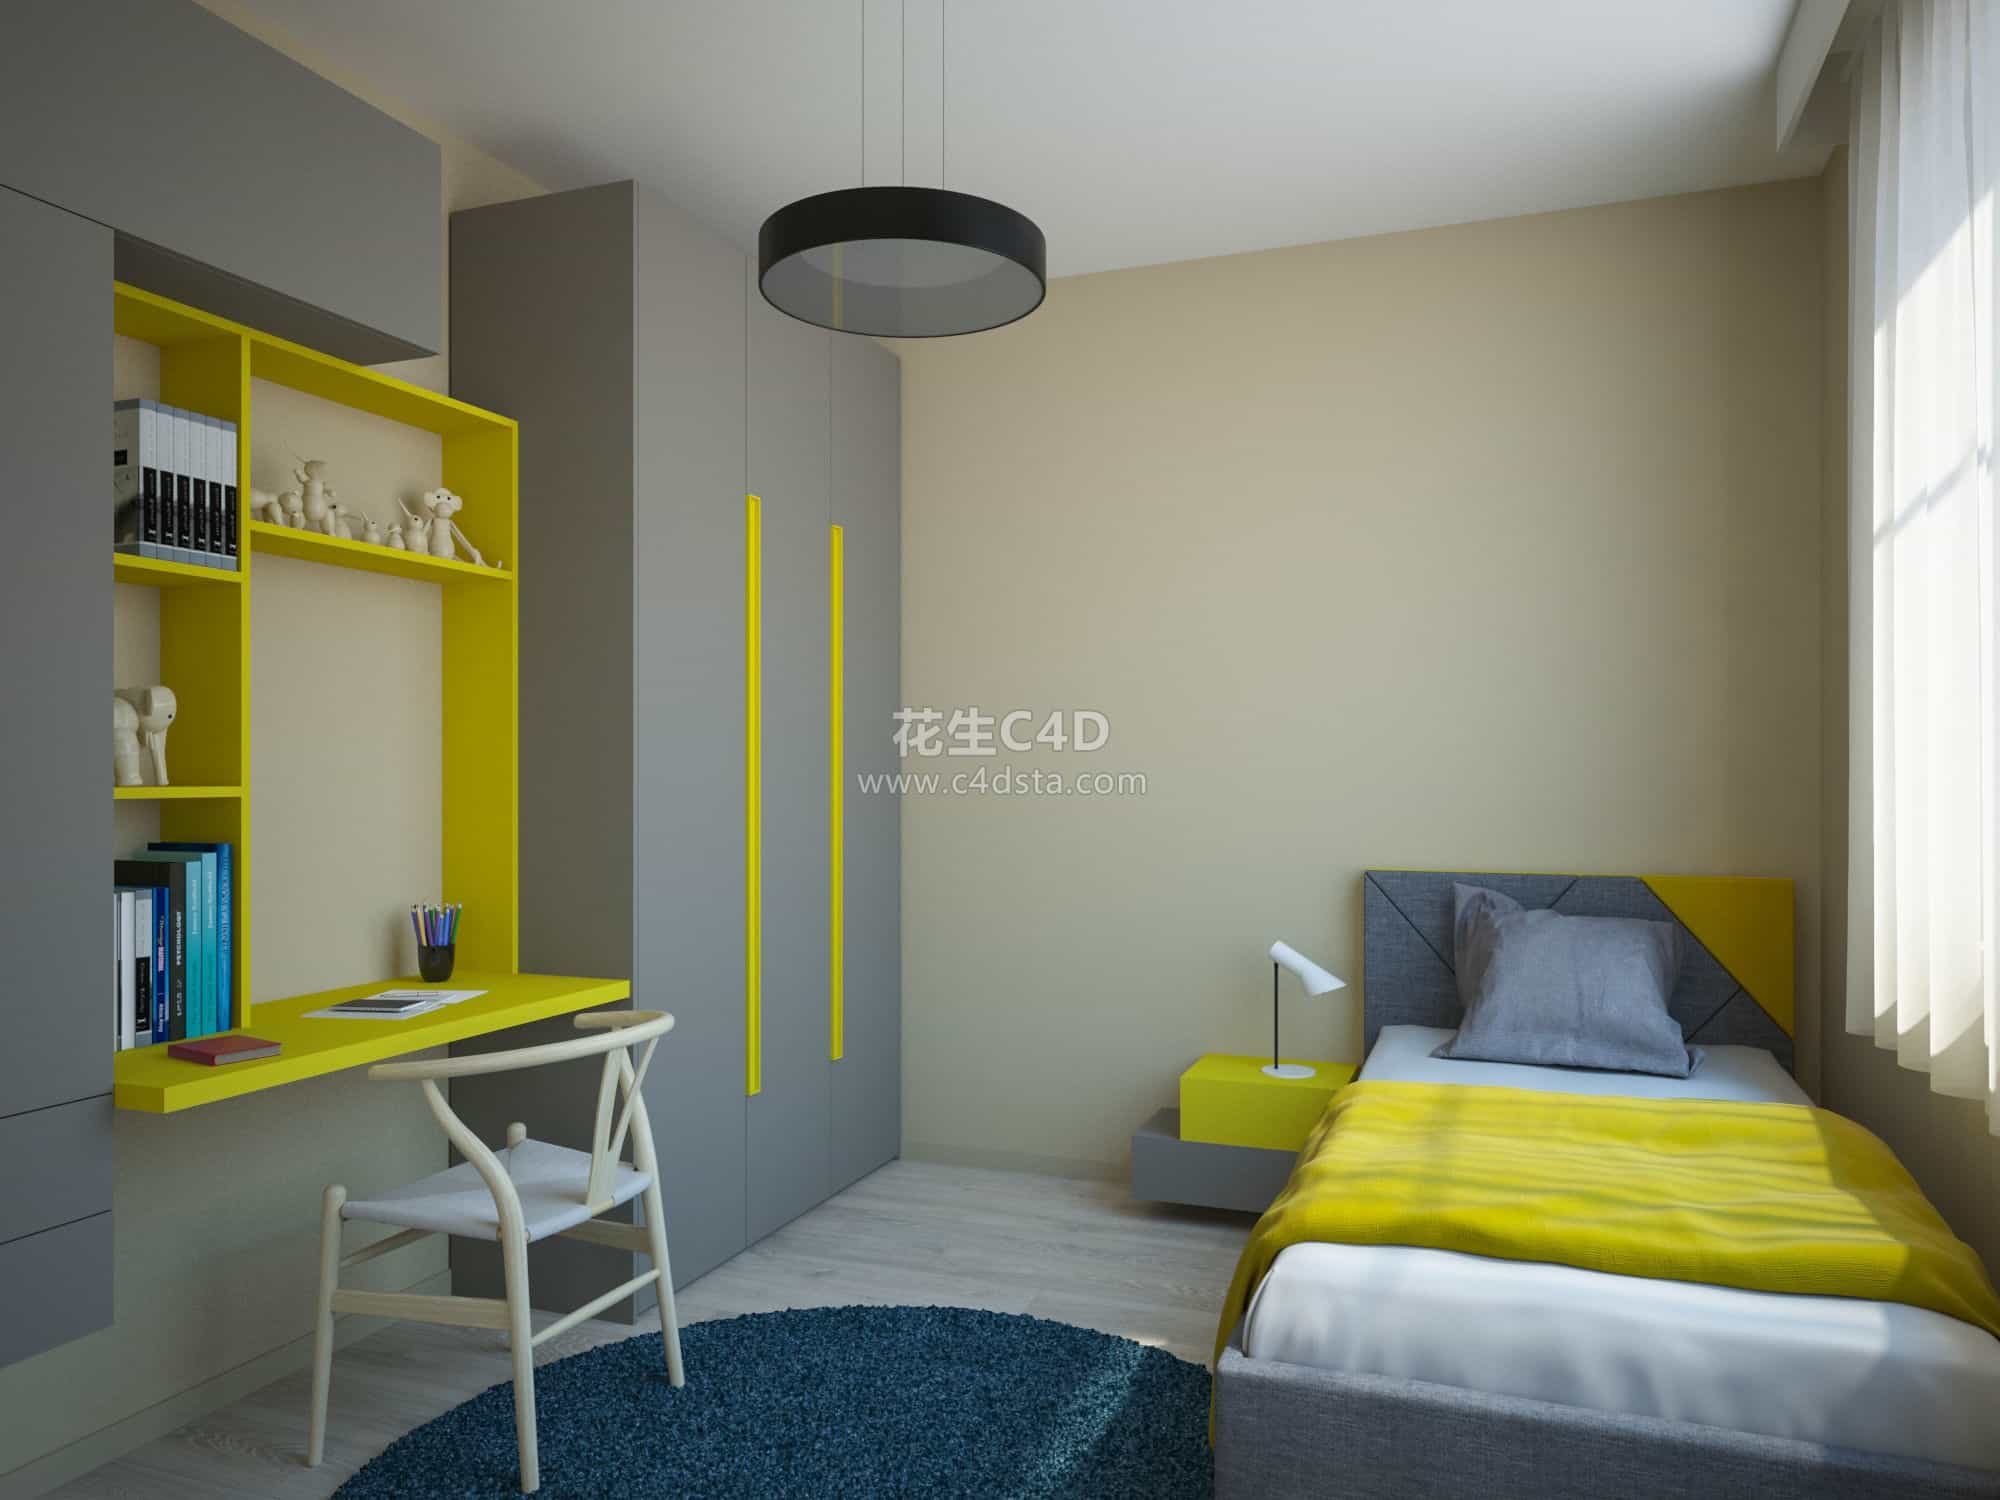 三维模型-超精细温馨室内卧室模型 626CG资源站